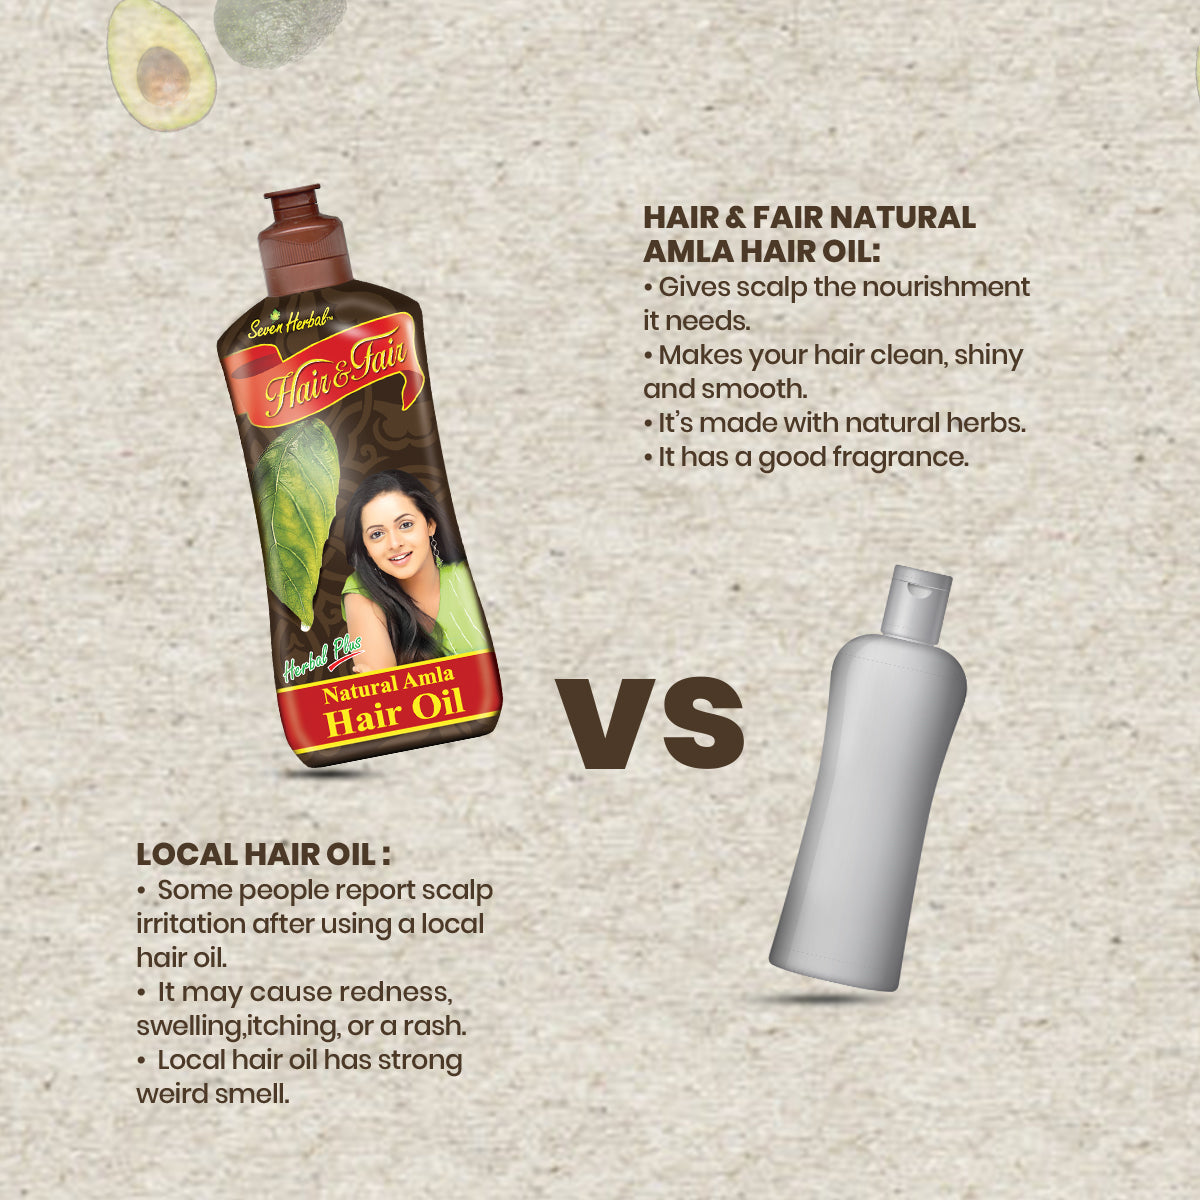 Hair & Fair Natural Amla Hair Oil